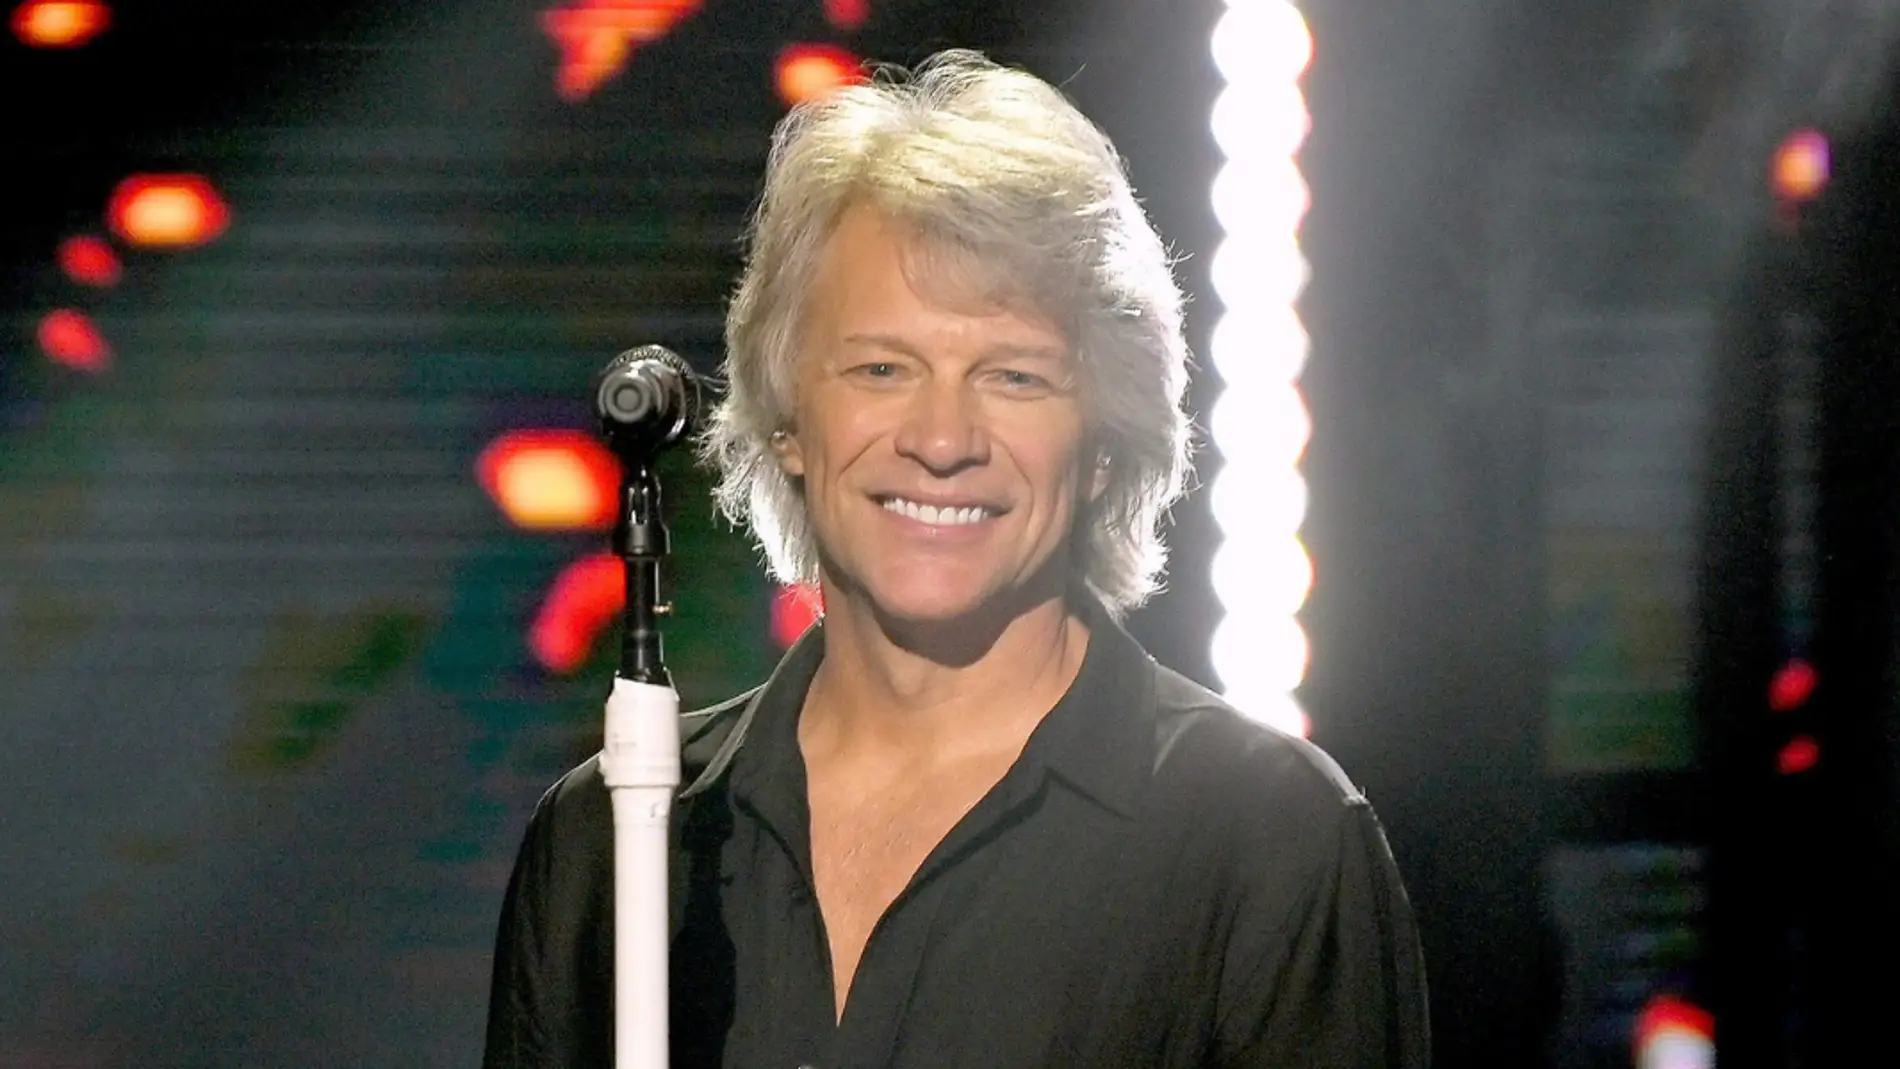 Bon Jovi durante una actuación